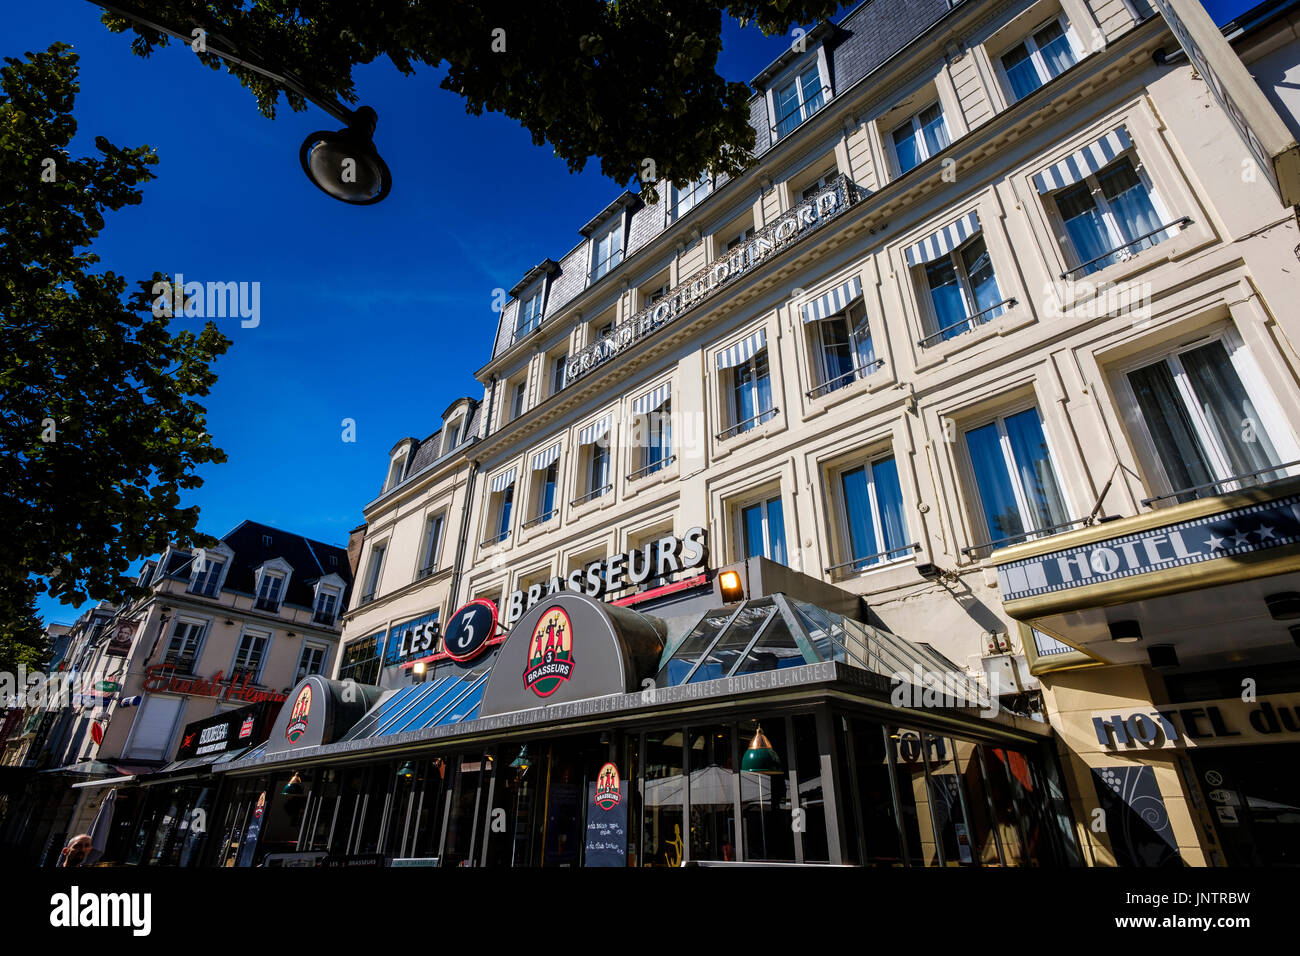 Grand Hotel du Nord en la Place Drouet d'Erlon, Reims, Francia Foto de stock